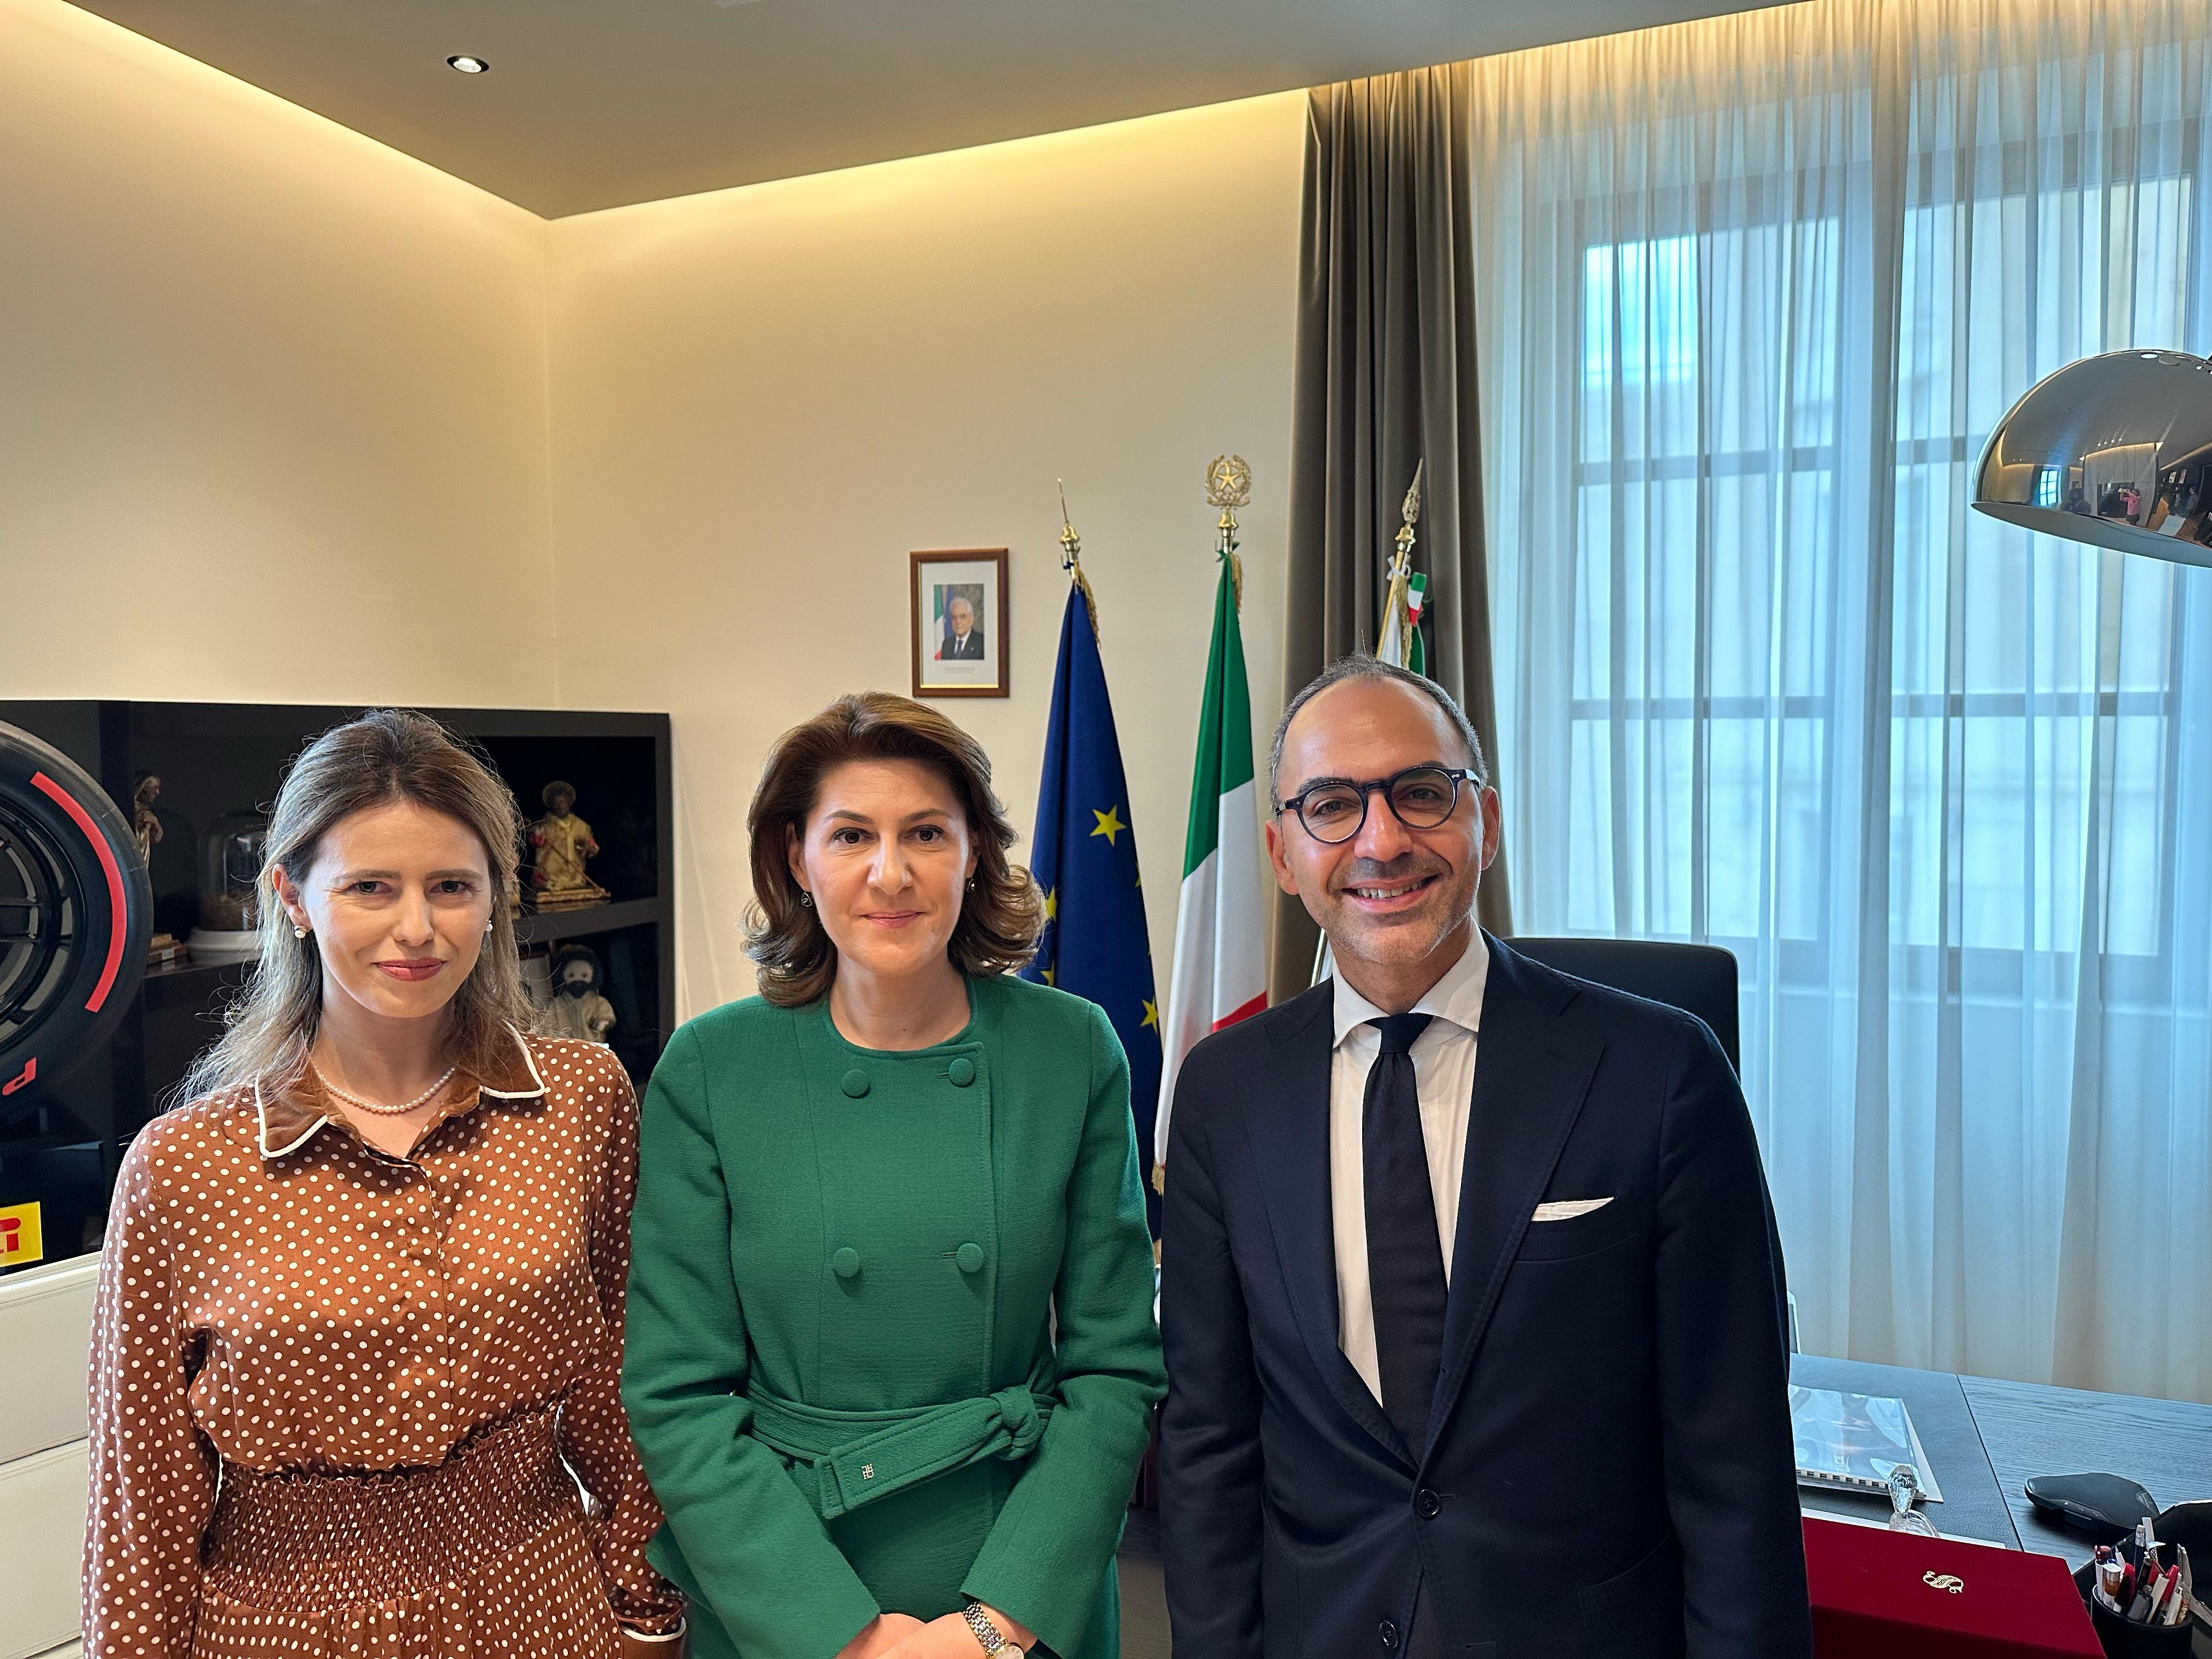 Galleria Il vice presidente della Regione Puglia Piemontese riceve  l’ambasciatrice di Romania in Italia - Diapositiva 4 di 4